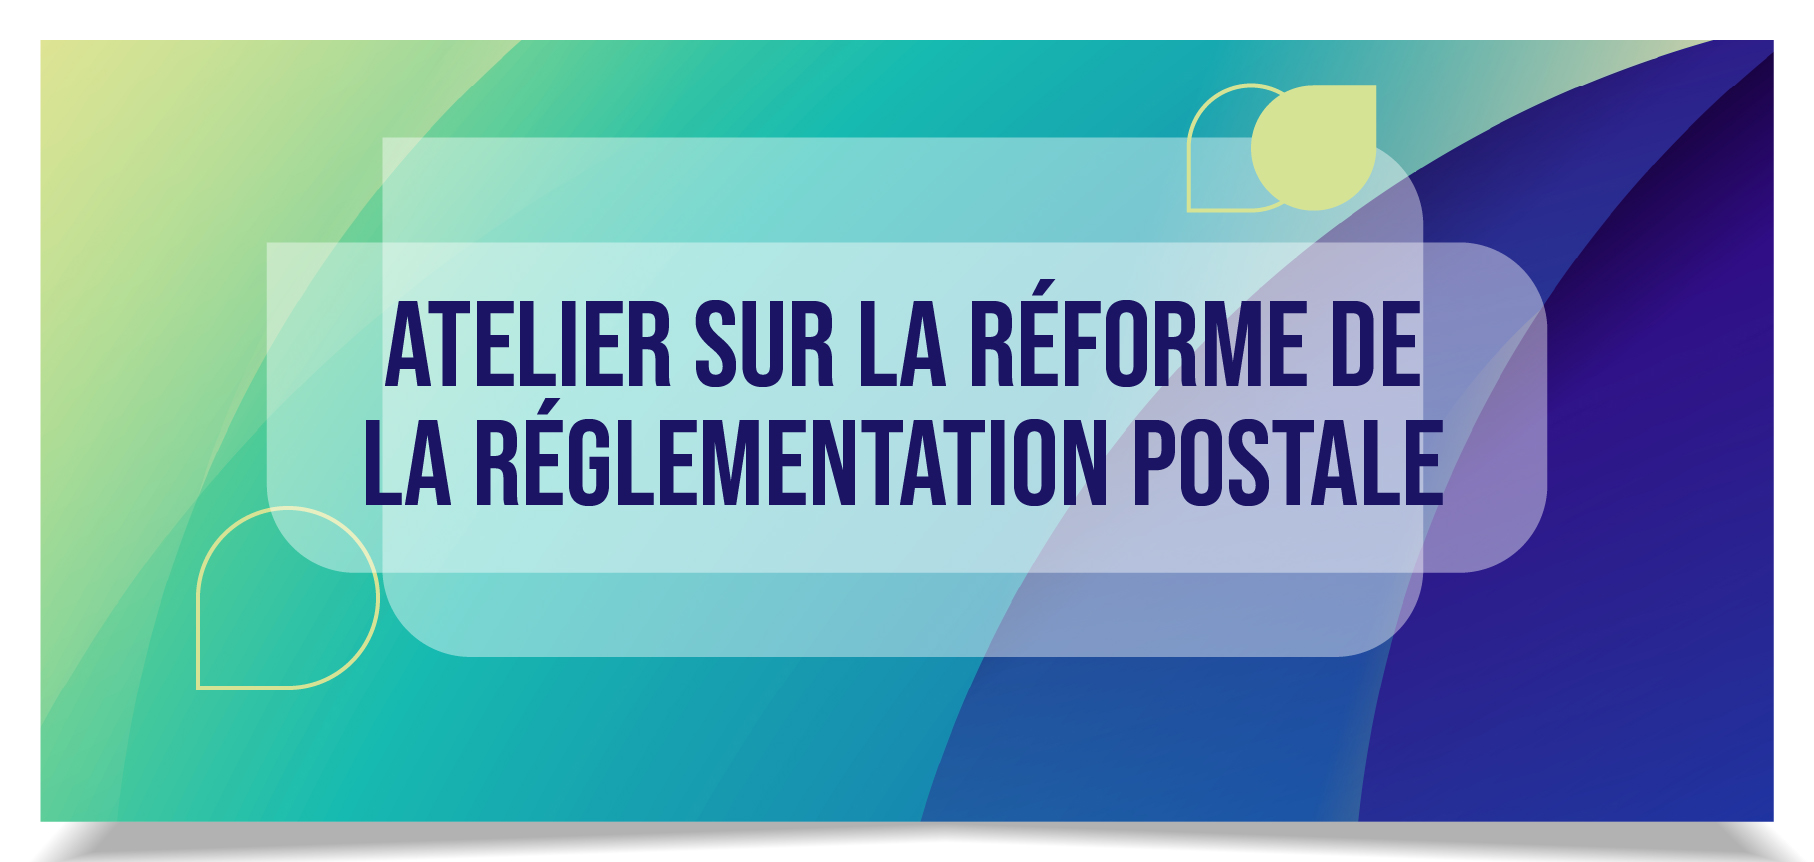 Atelier sur la réforme de la réglementation postale